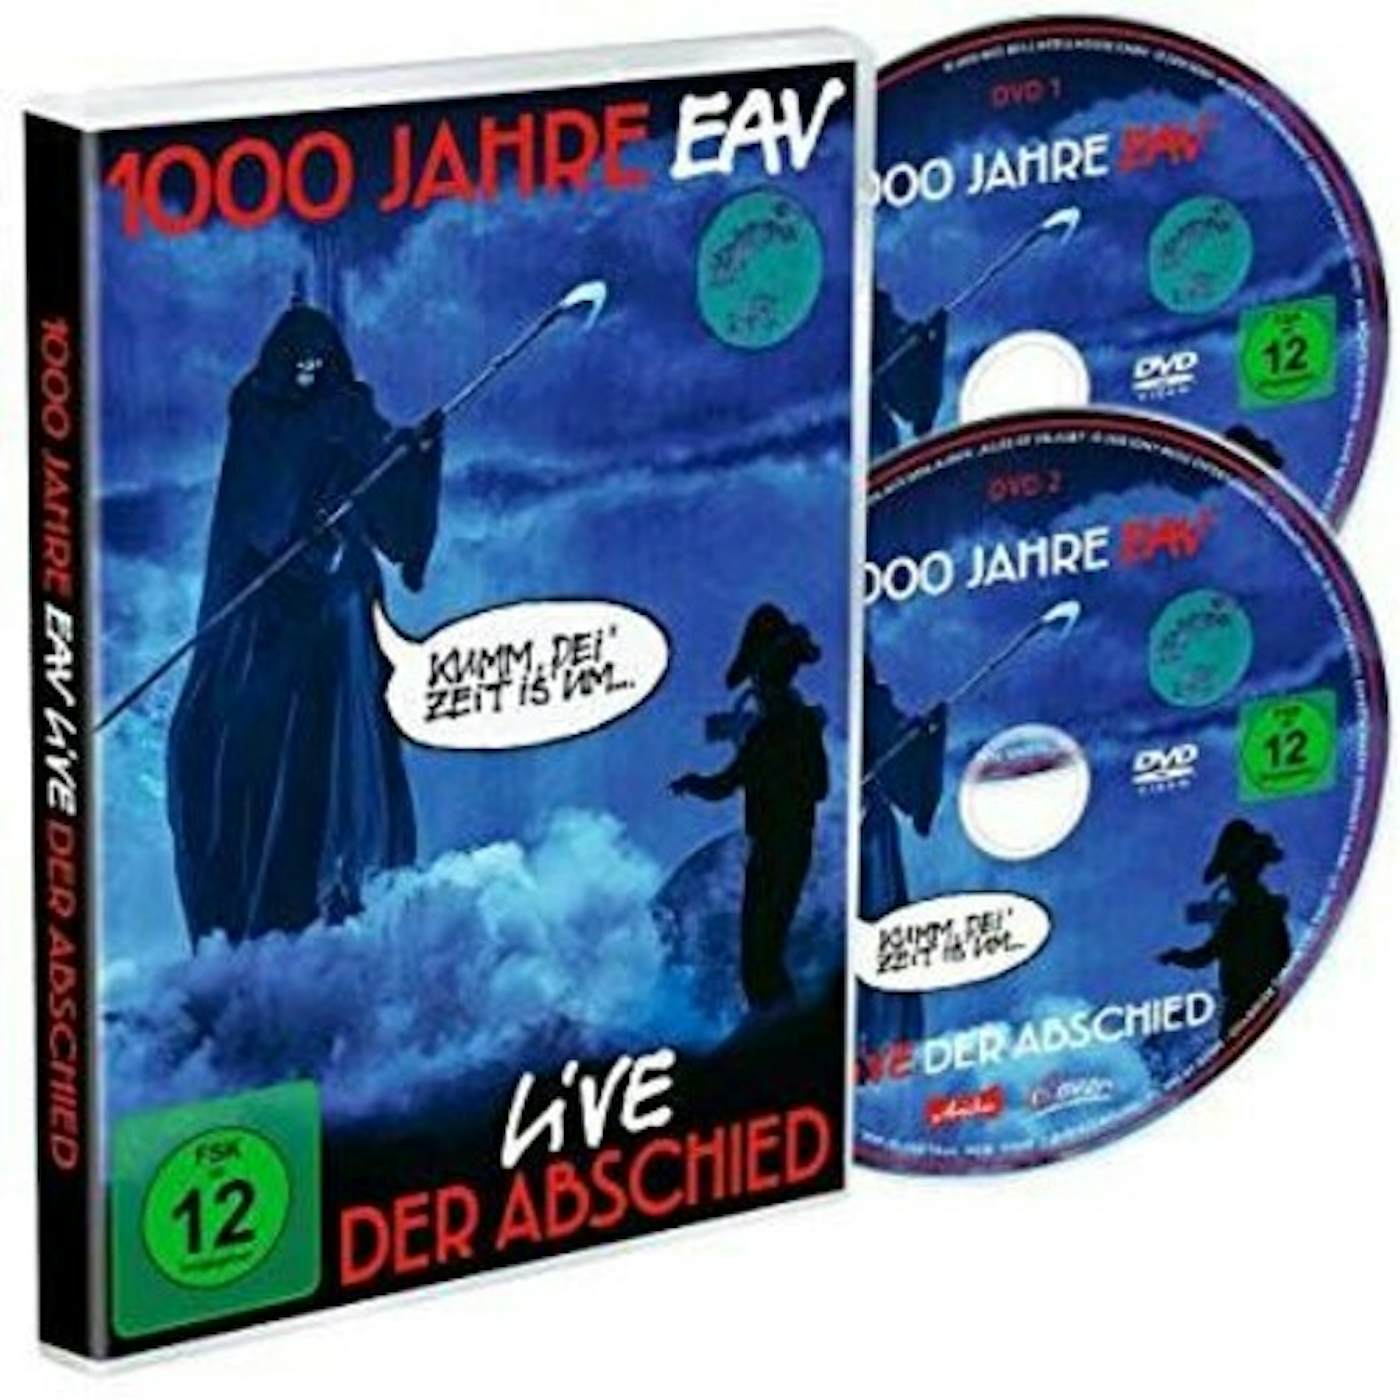 1000 JAHRE EAV LIVE: DER ABSCHIED DVD